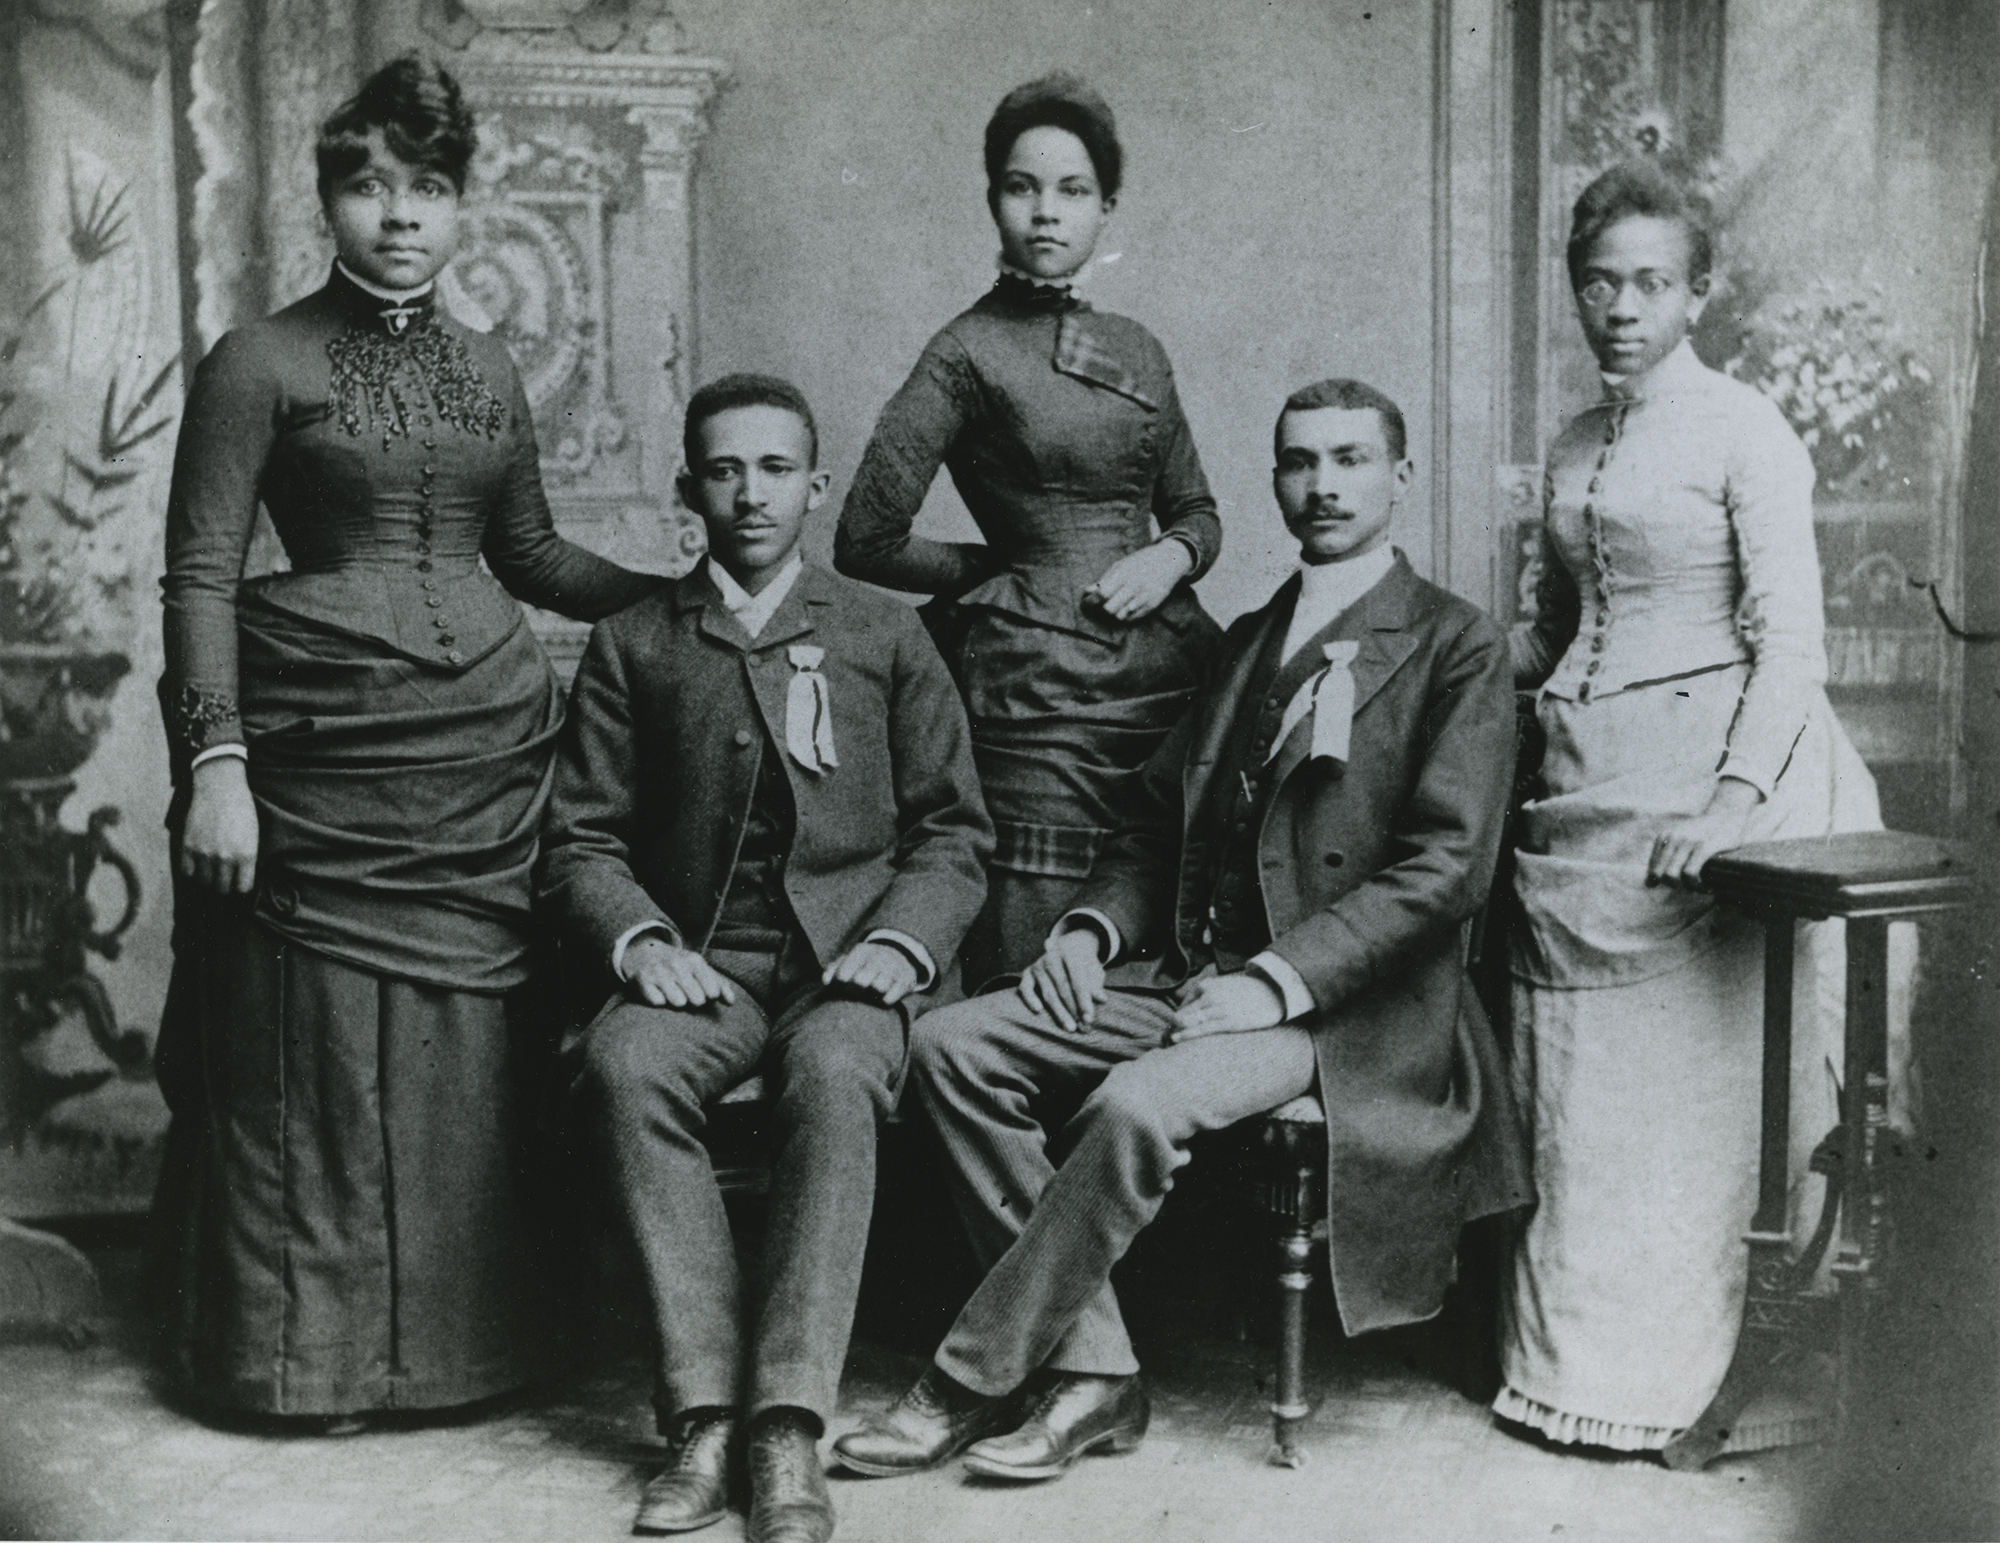 W.E.B. Du Bois with classmates at Fisk University.